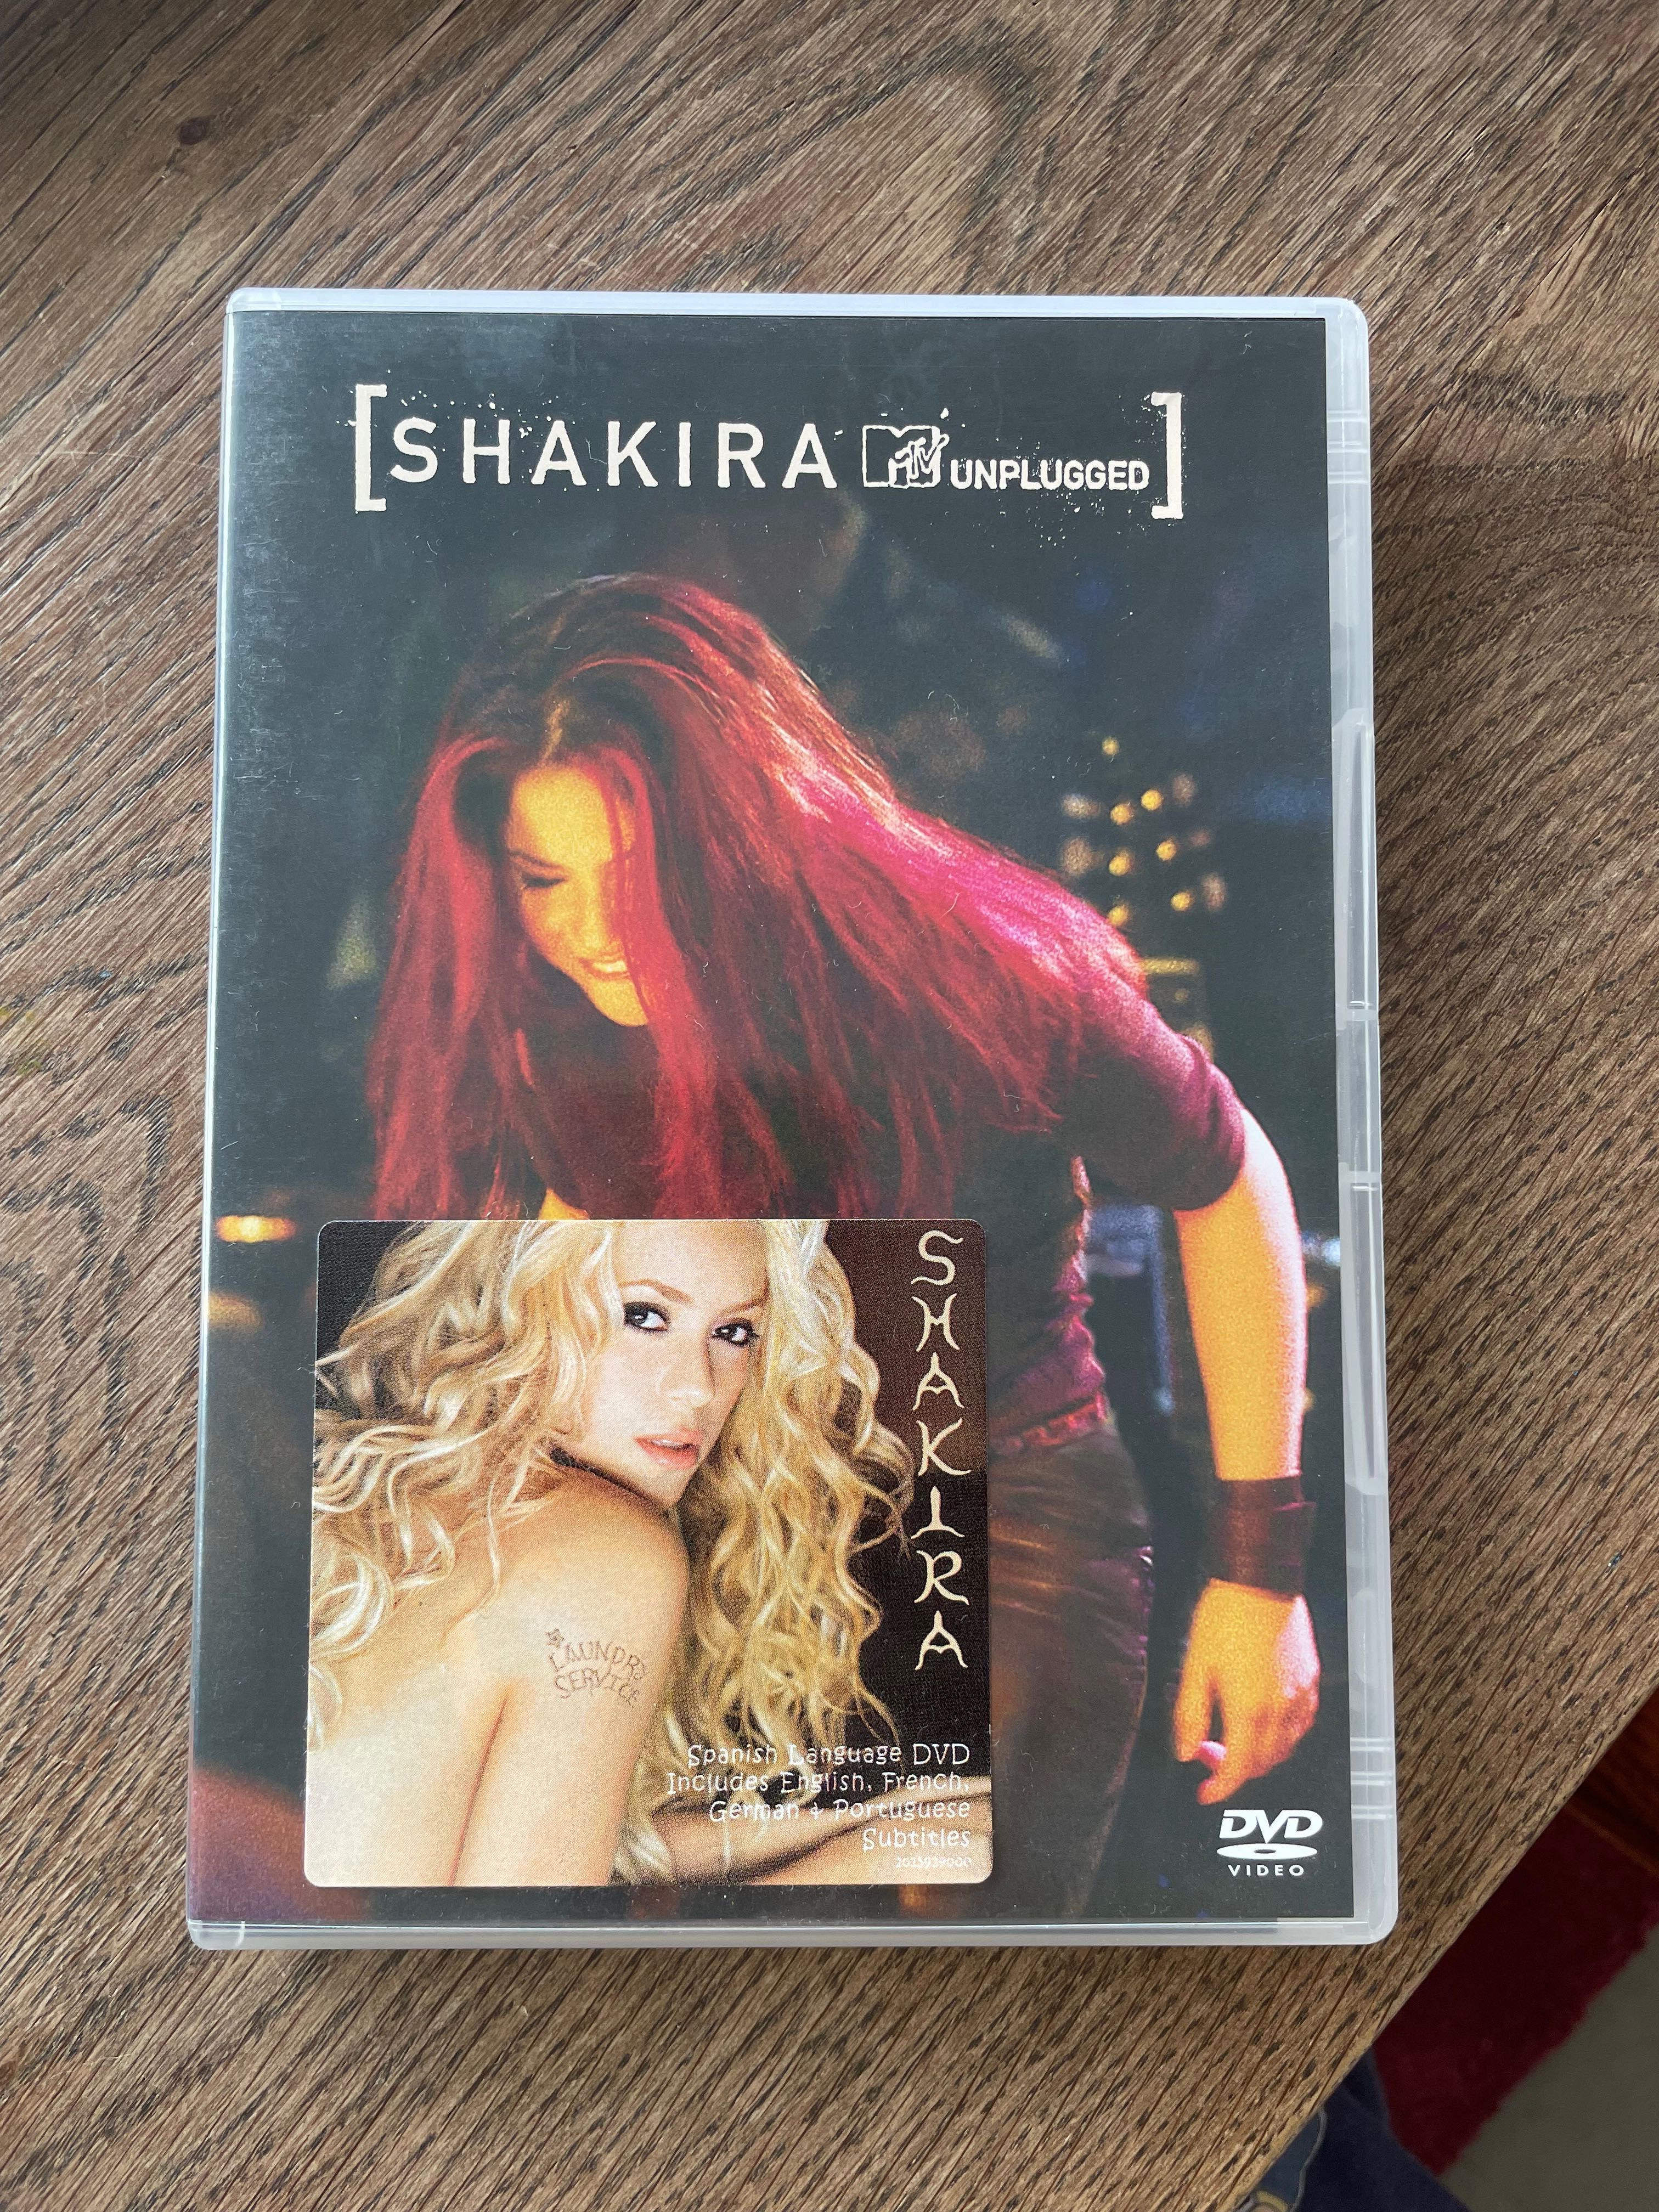 DVD “Shakira Unplugged”